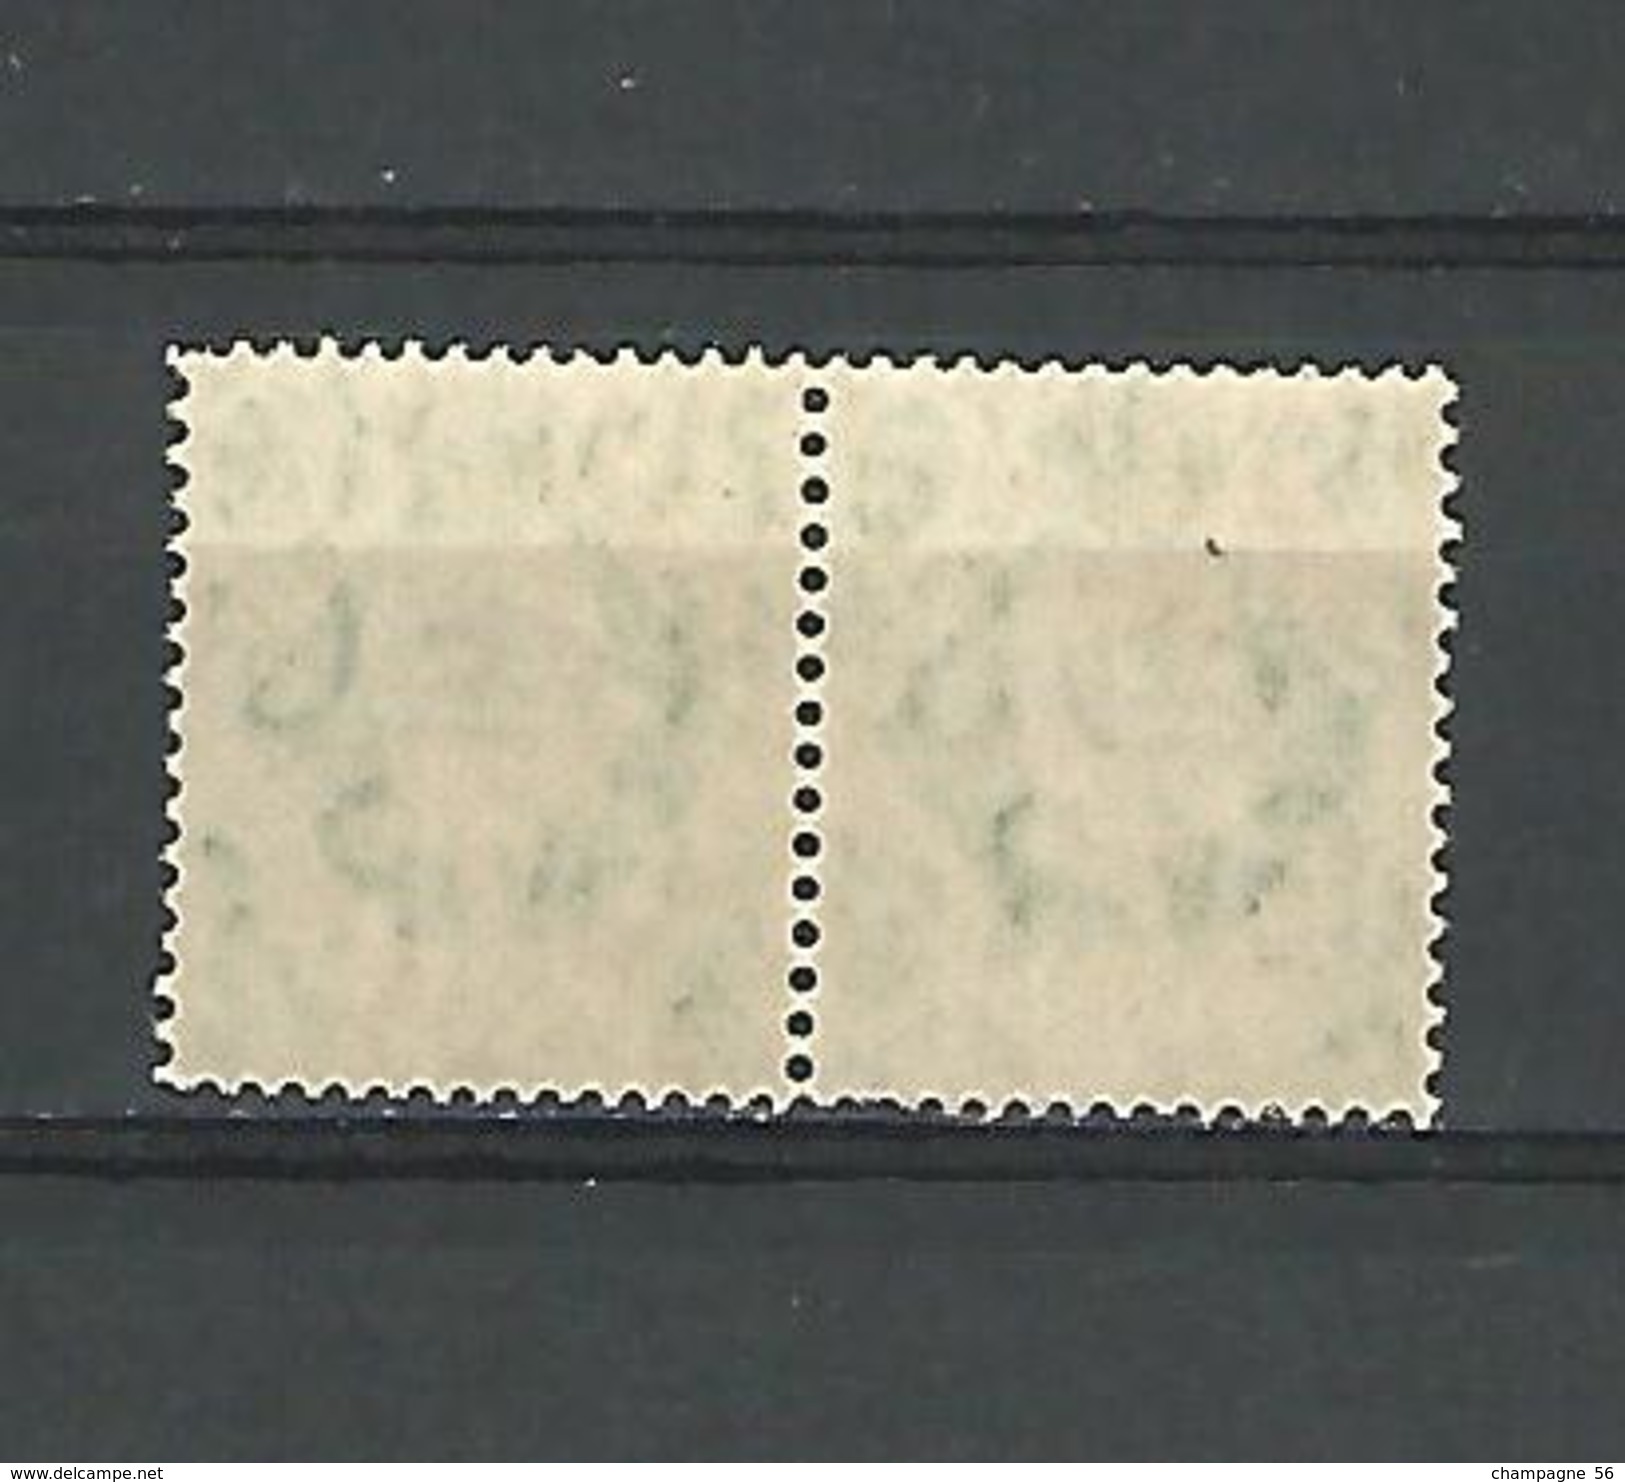 1937 - 47  N° 218  SE-TENANT  7 D VERT JAUNE     GEORGES VI  NEUF ** GOMME YVERT TELLIER 5.00 € X 2 = 10.00 € - Unused Stamps